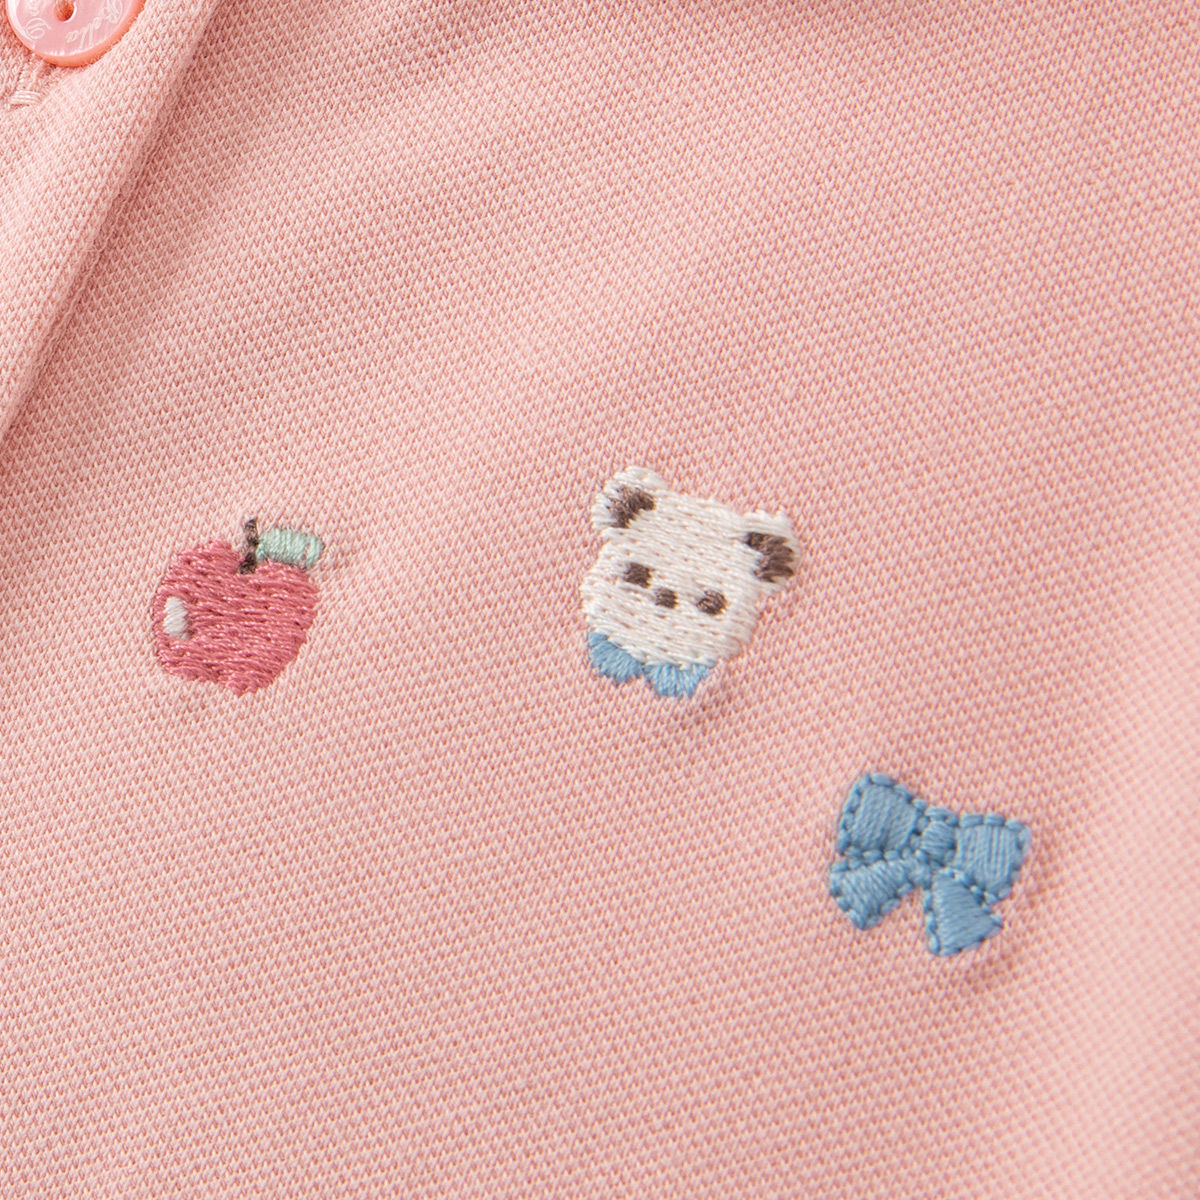 女童夏季T恤2022新款童装儿童短袖小童女孩宝宝夏装粉色洋气上衣